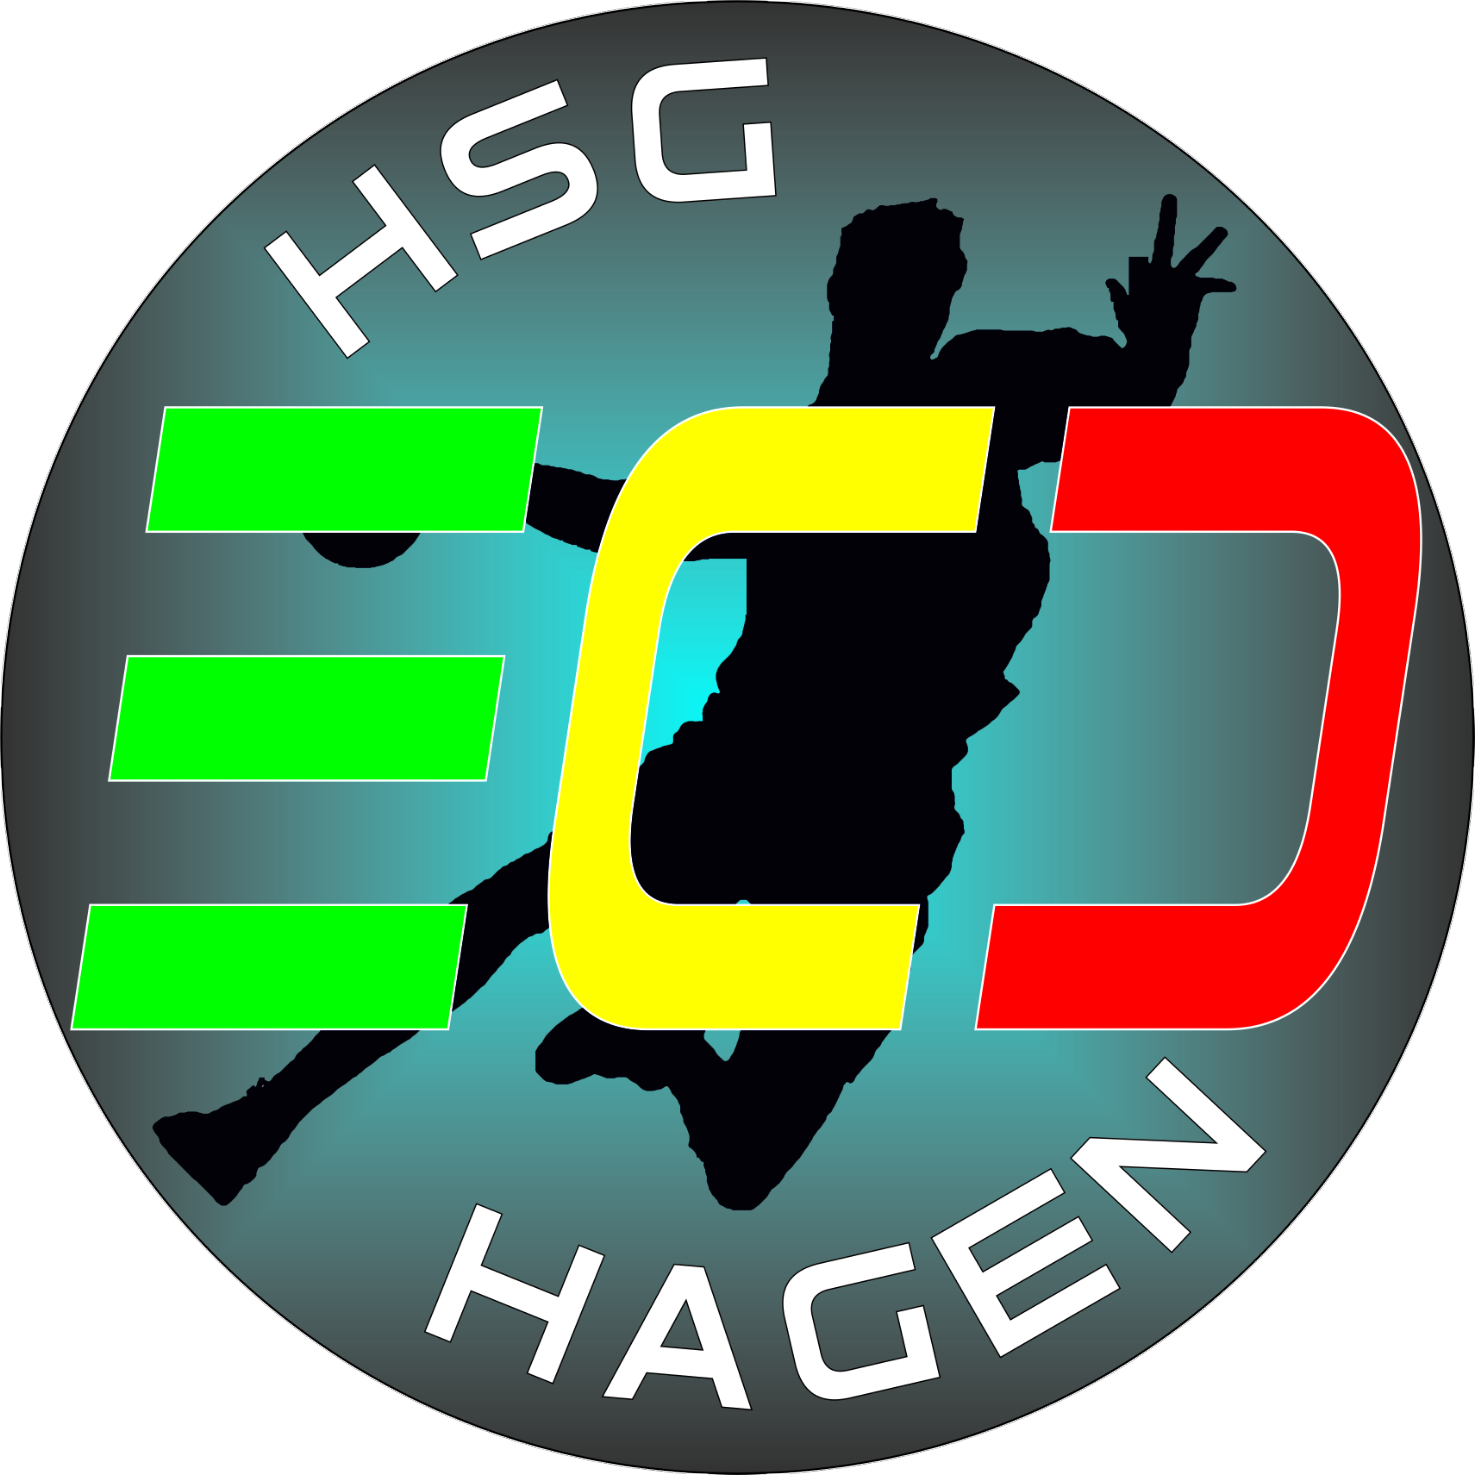 (c) Hsg-ecd-hagen.de